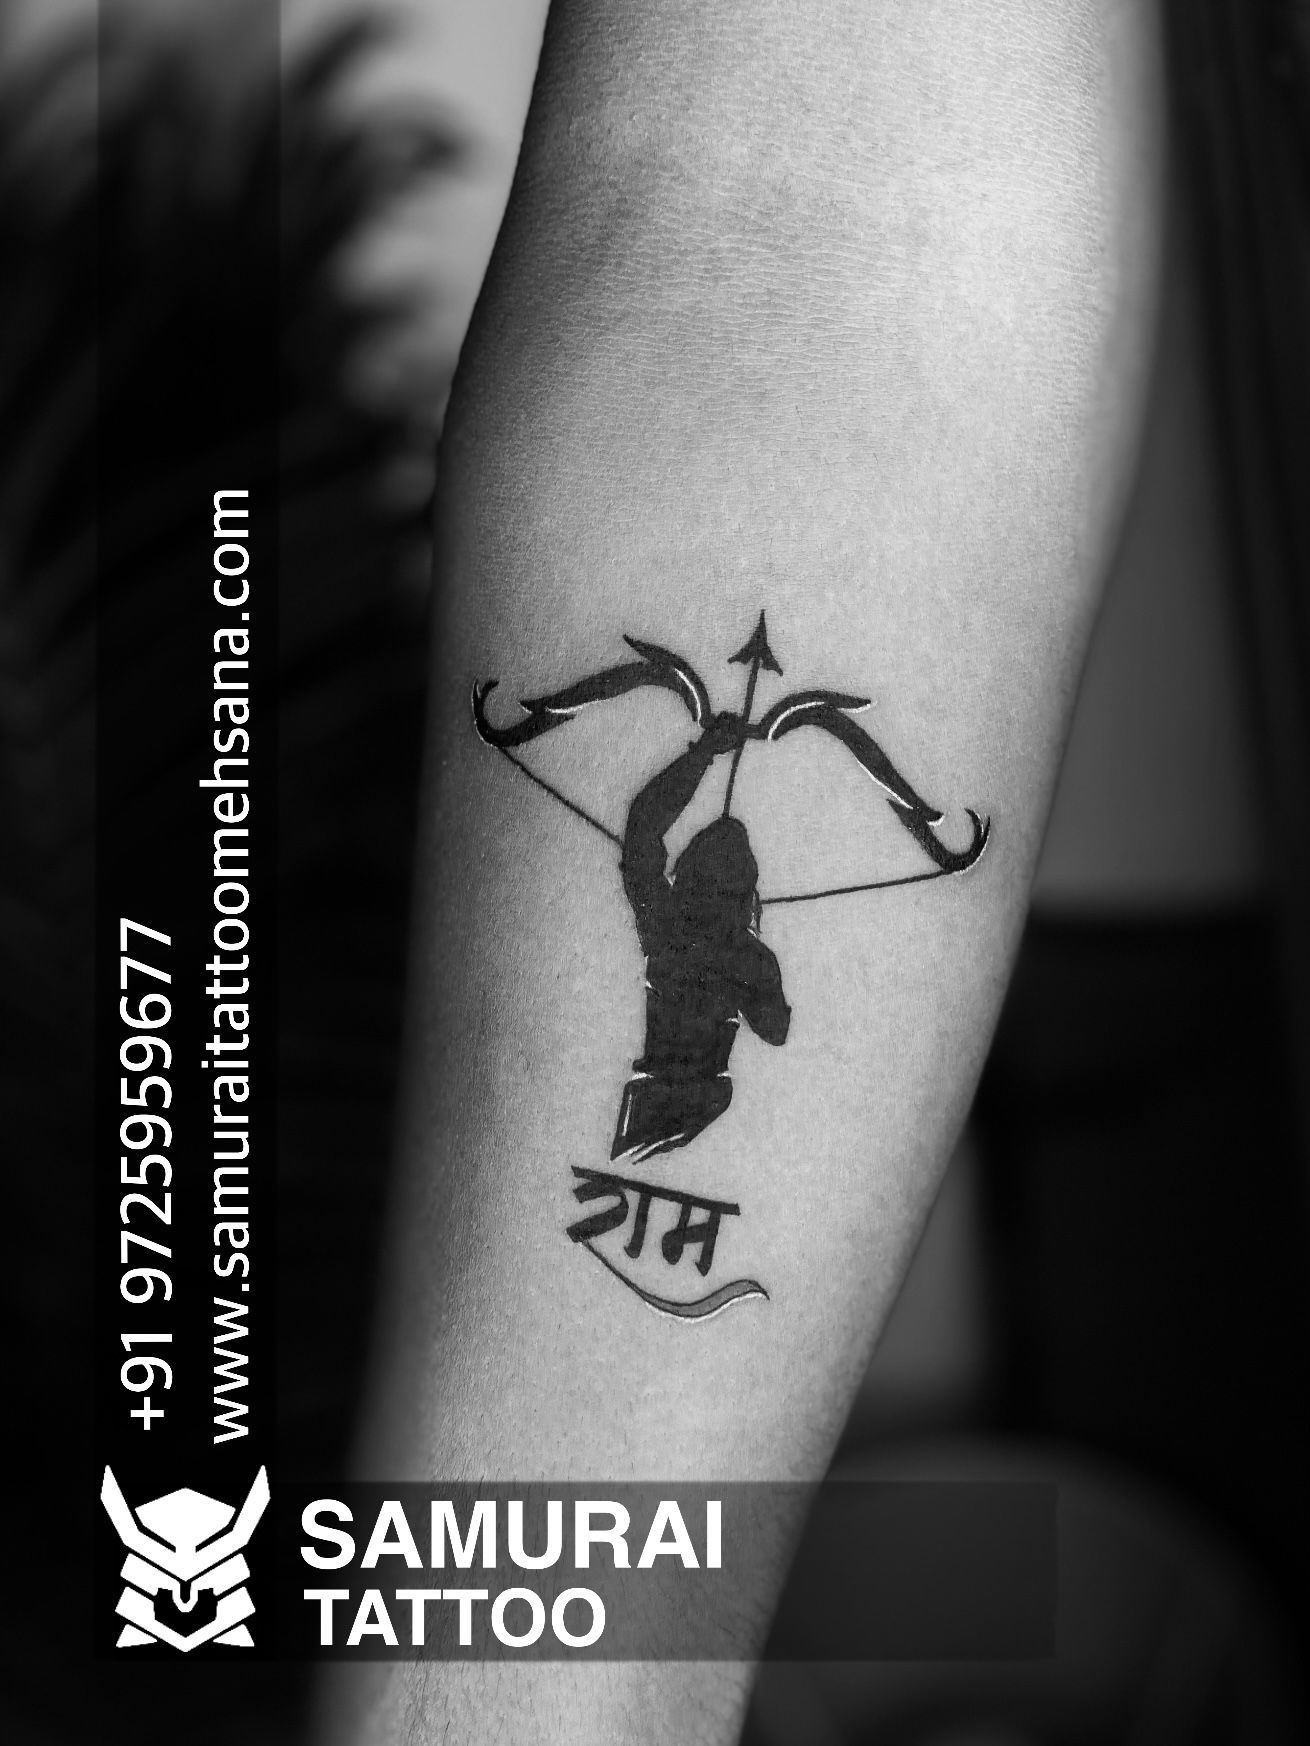 Shree ganesh tattoo | Ant tattoo, Ganesh tattoo, Tattoos